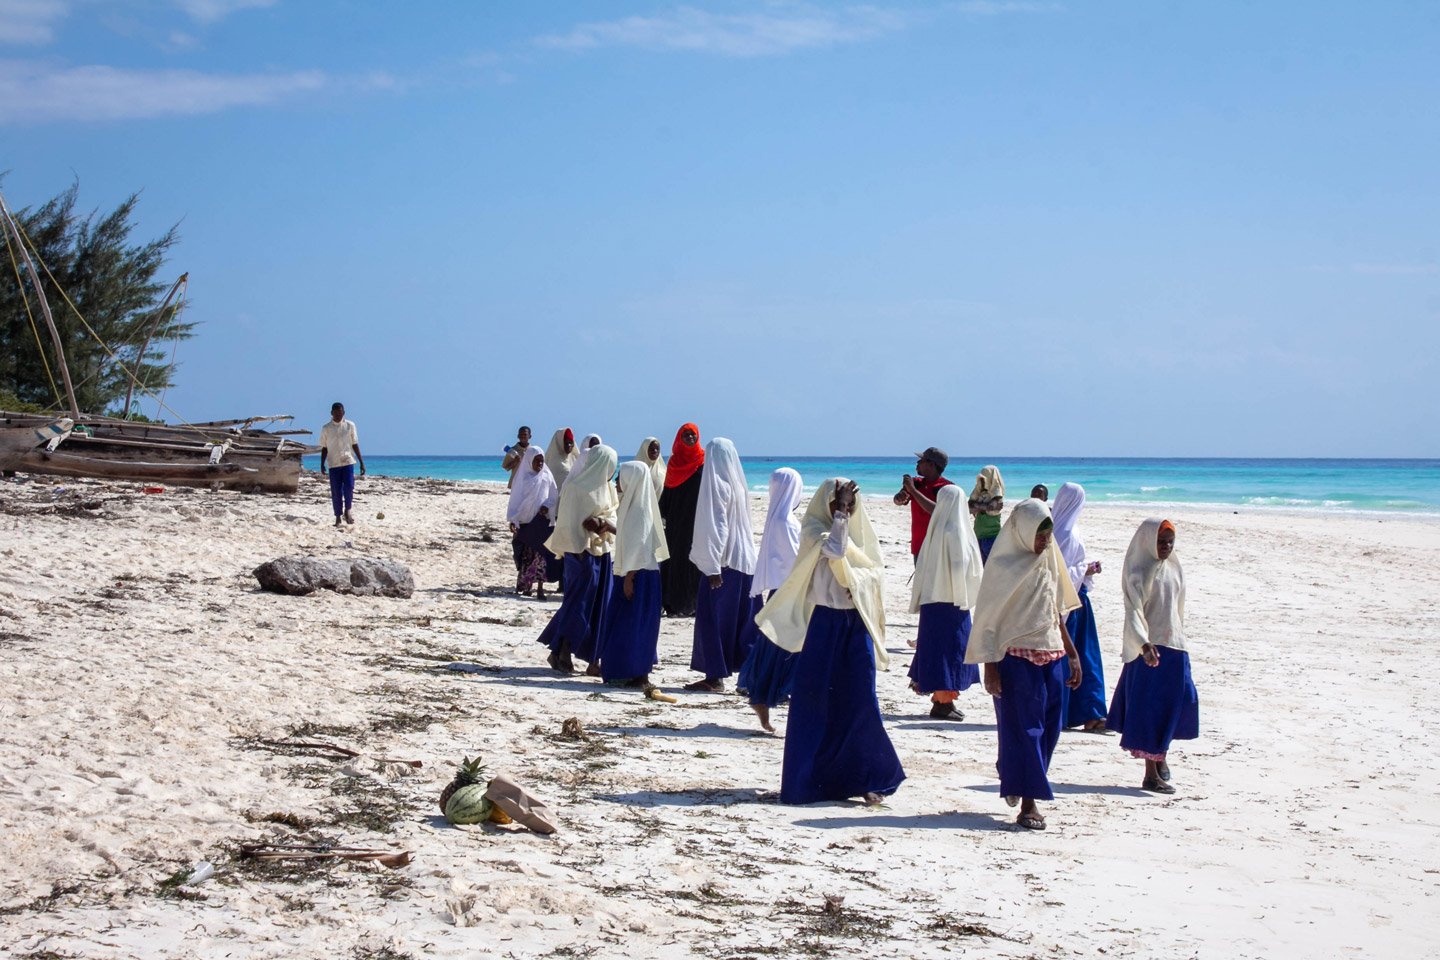 Escolares con prendas islámicas en playa de Zanzibar